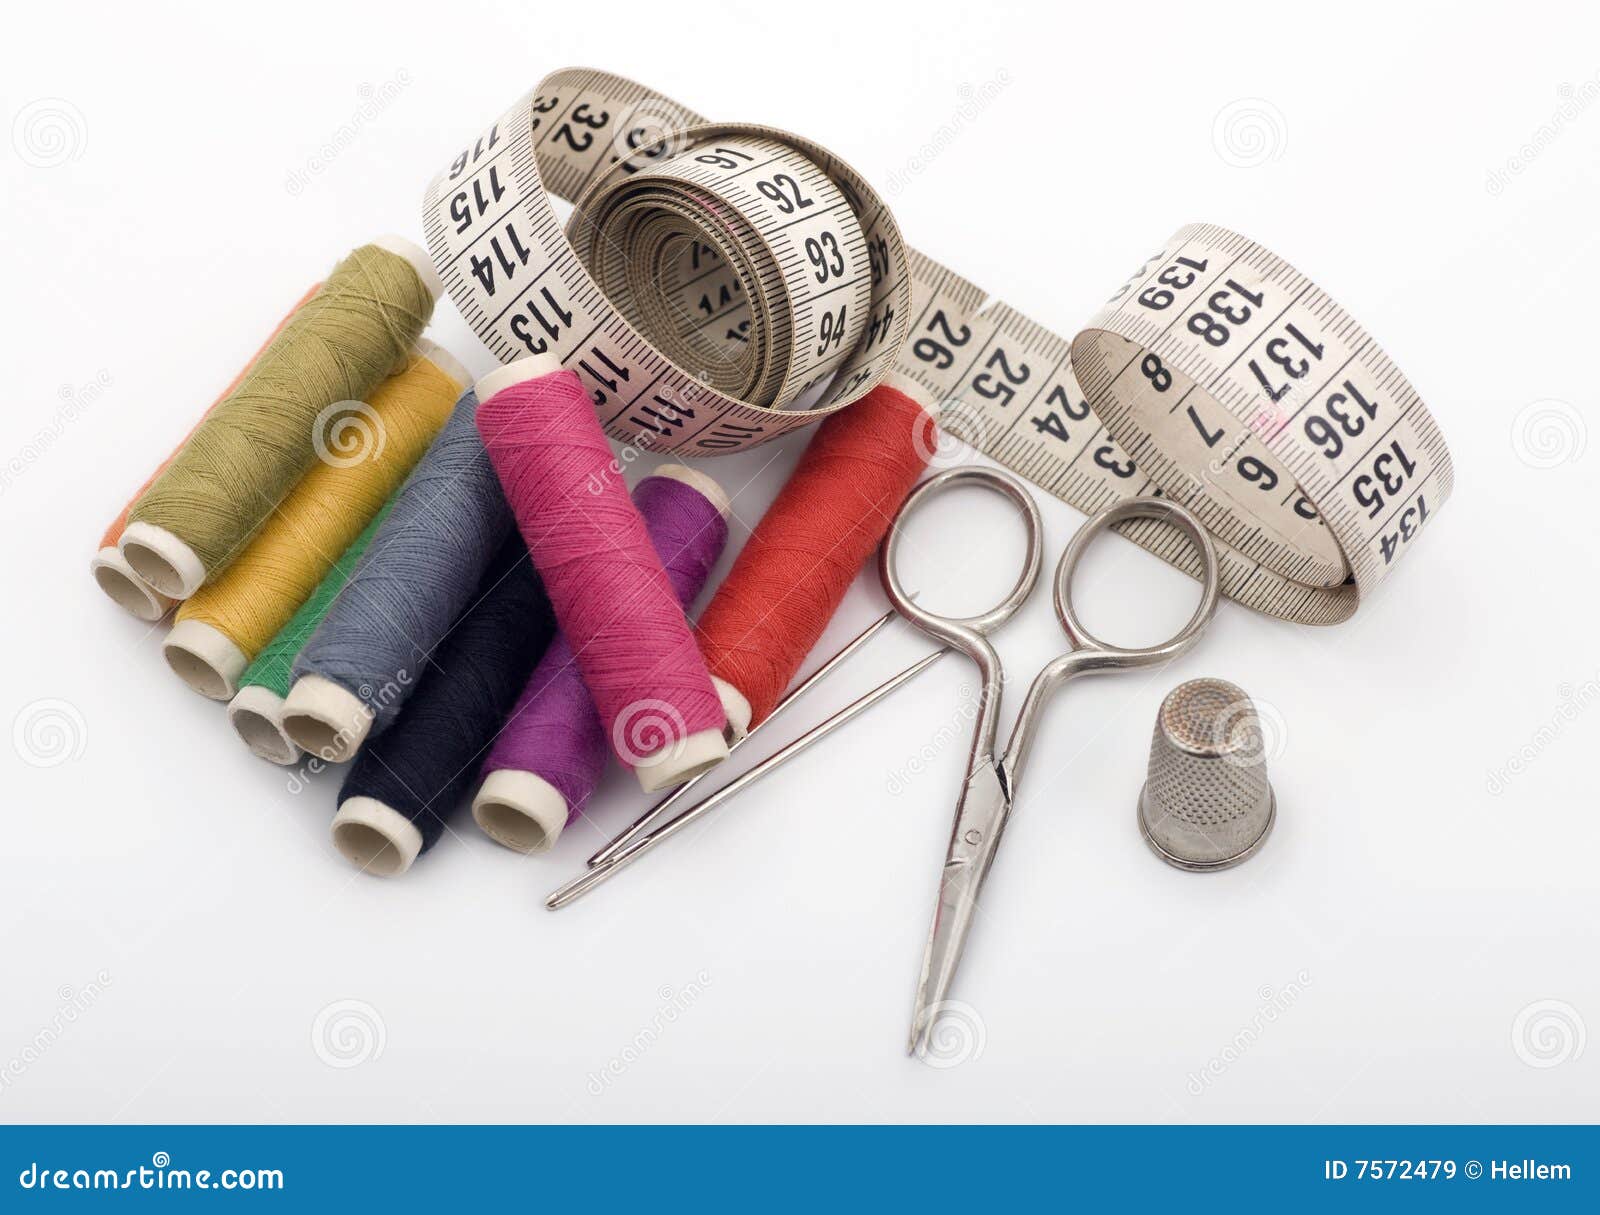 Yarn, Needles, Scissor and Thimble Stock Image - Image of needlework ...